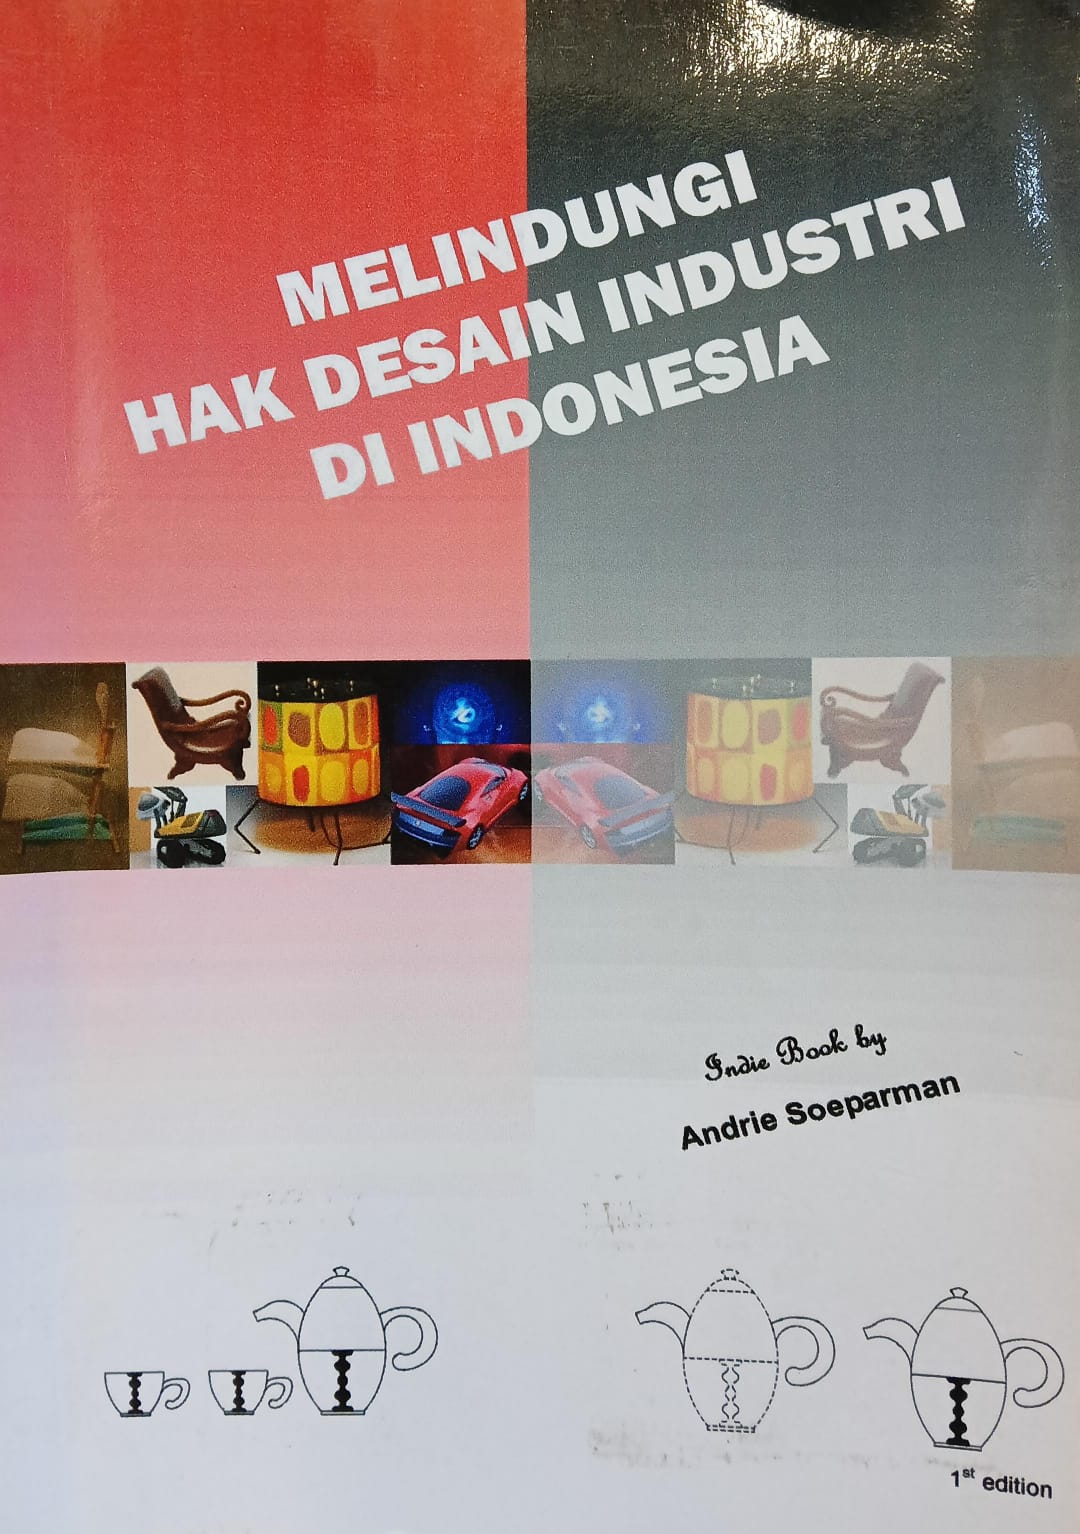 Melindungi hak desain industri di Indonesia